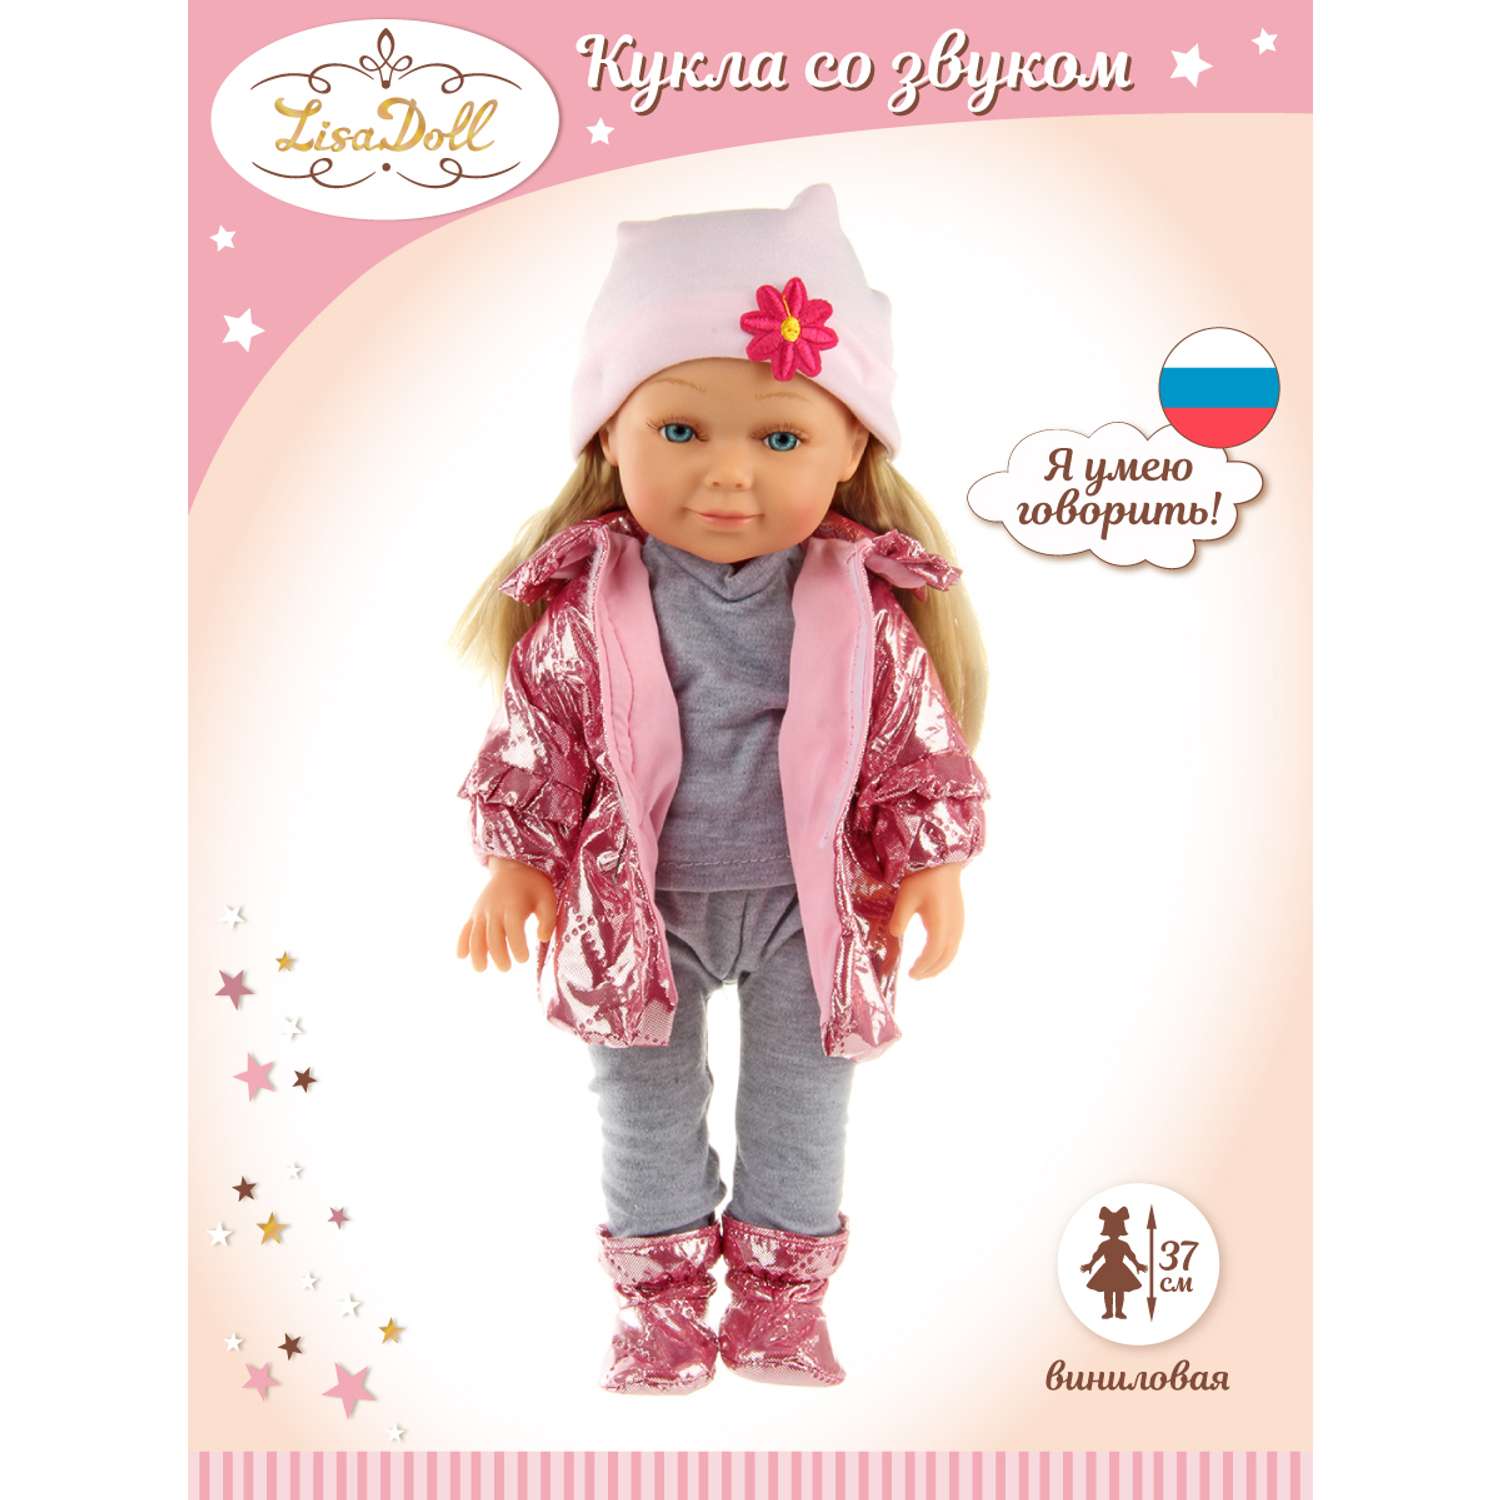 Кукла Lisa Doll Аврора 37 см русская озвучка 125878 - фото 2